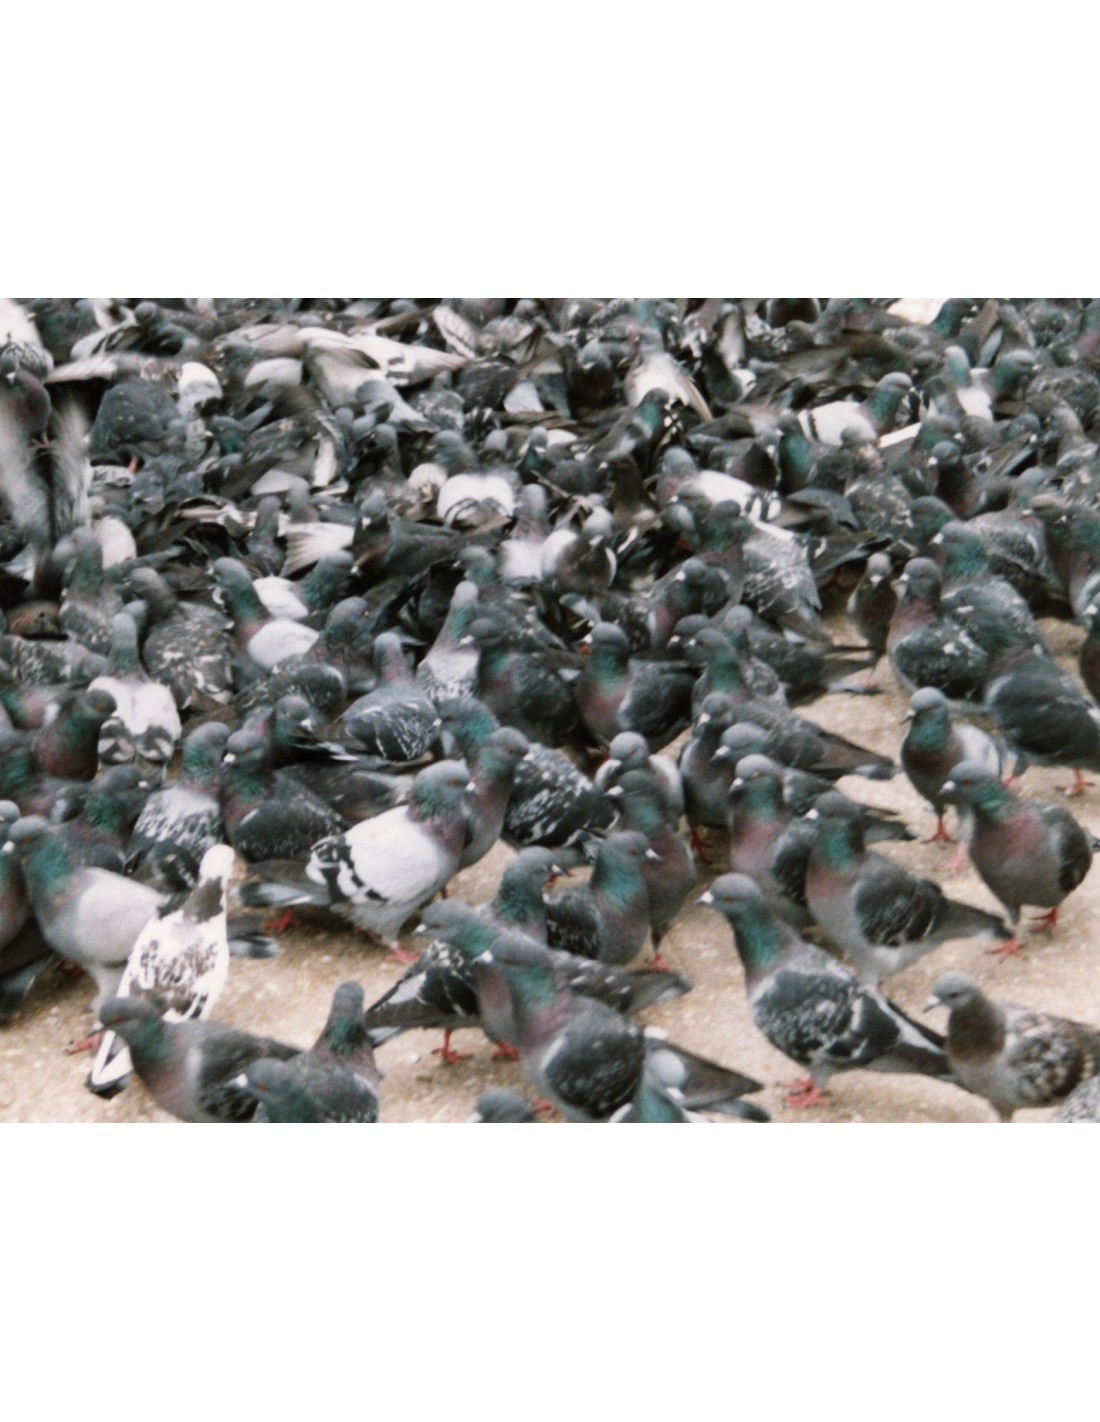 Dispositifs anti-pigeons sur mesure - Anticimex